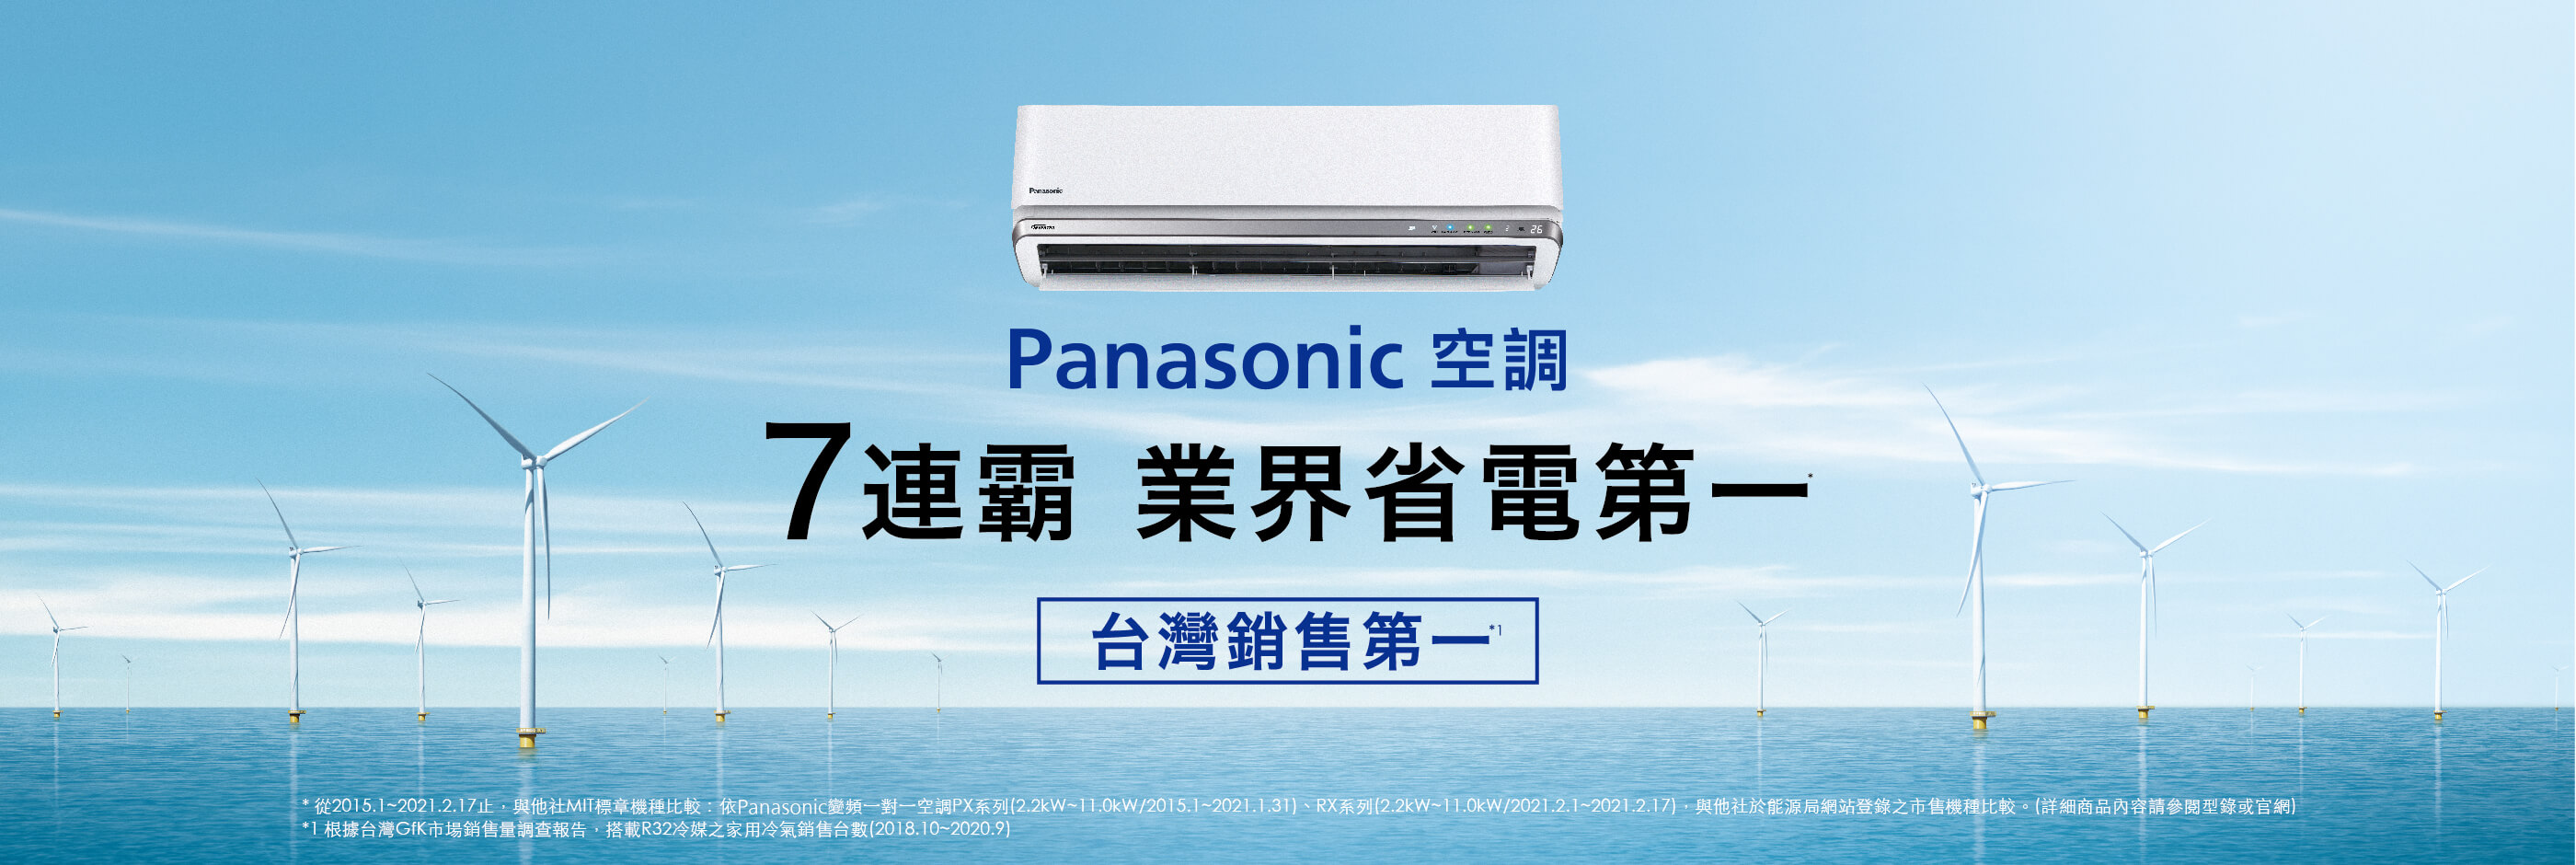 Panasonic空調7連霸業界省電第一